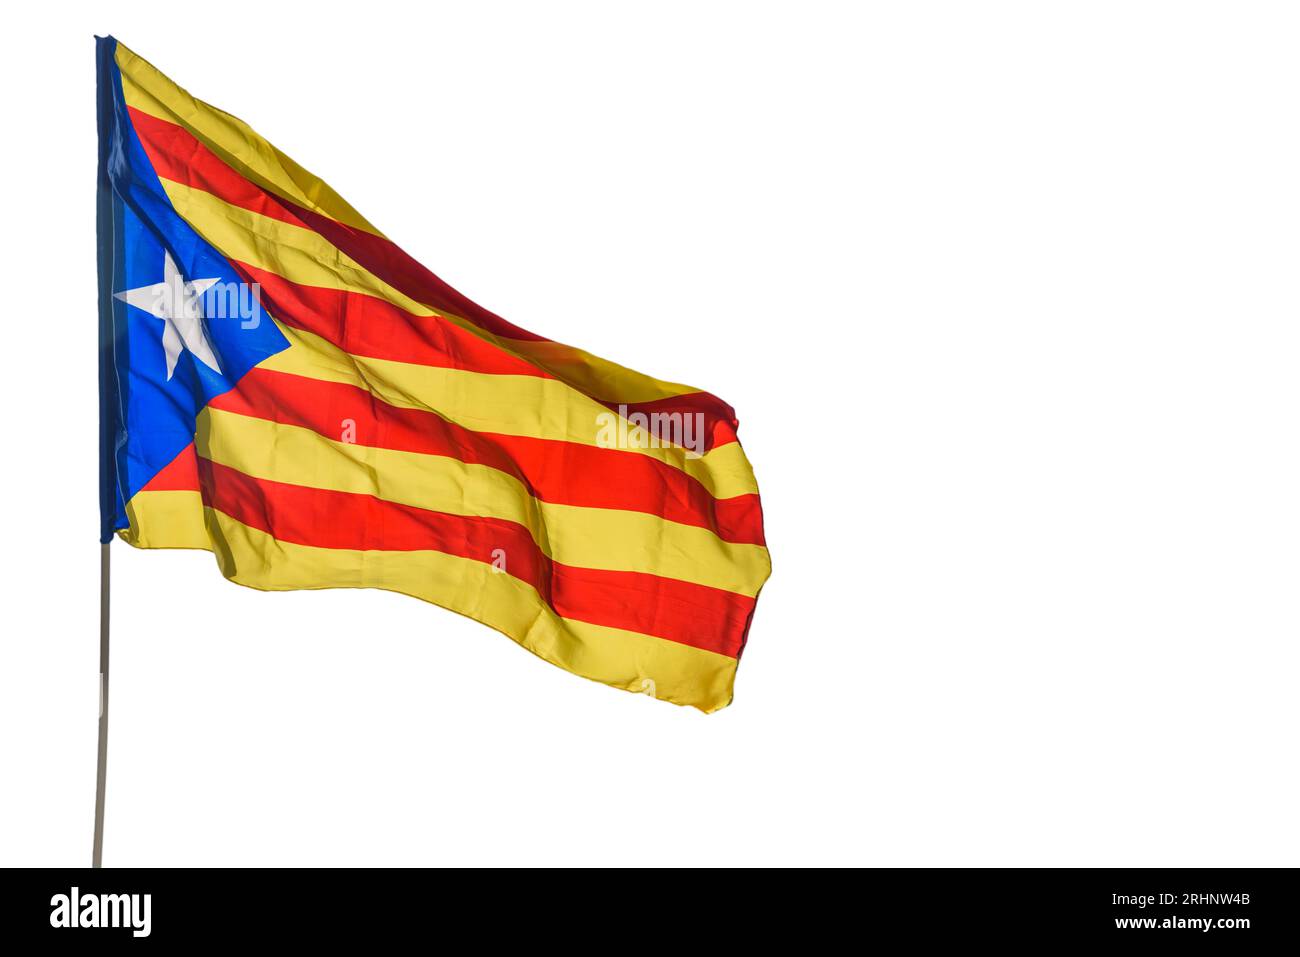 ESTELADA, drapeau de l'indépendance catalane. Isolé sur fond blanc ou transparent. png Banque D'Images